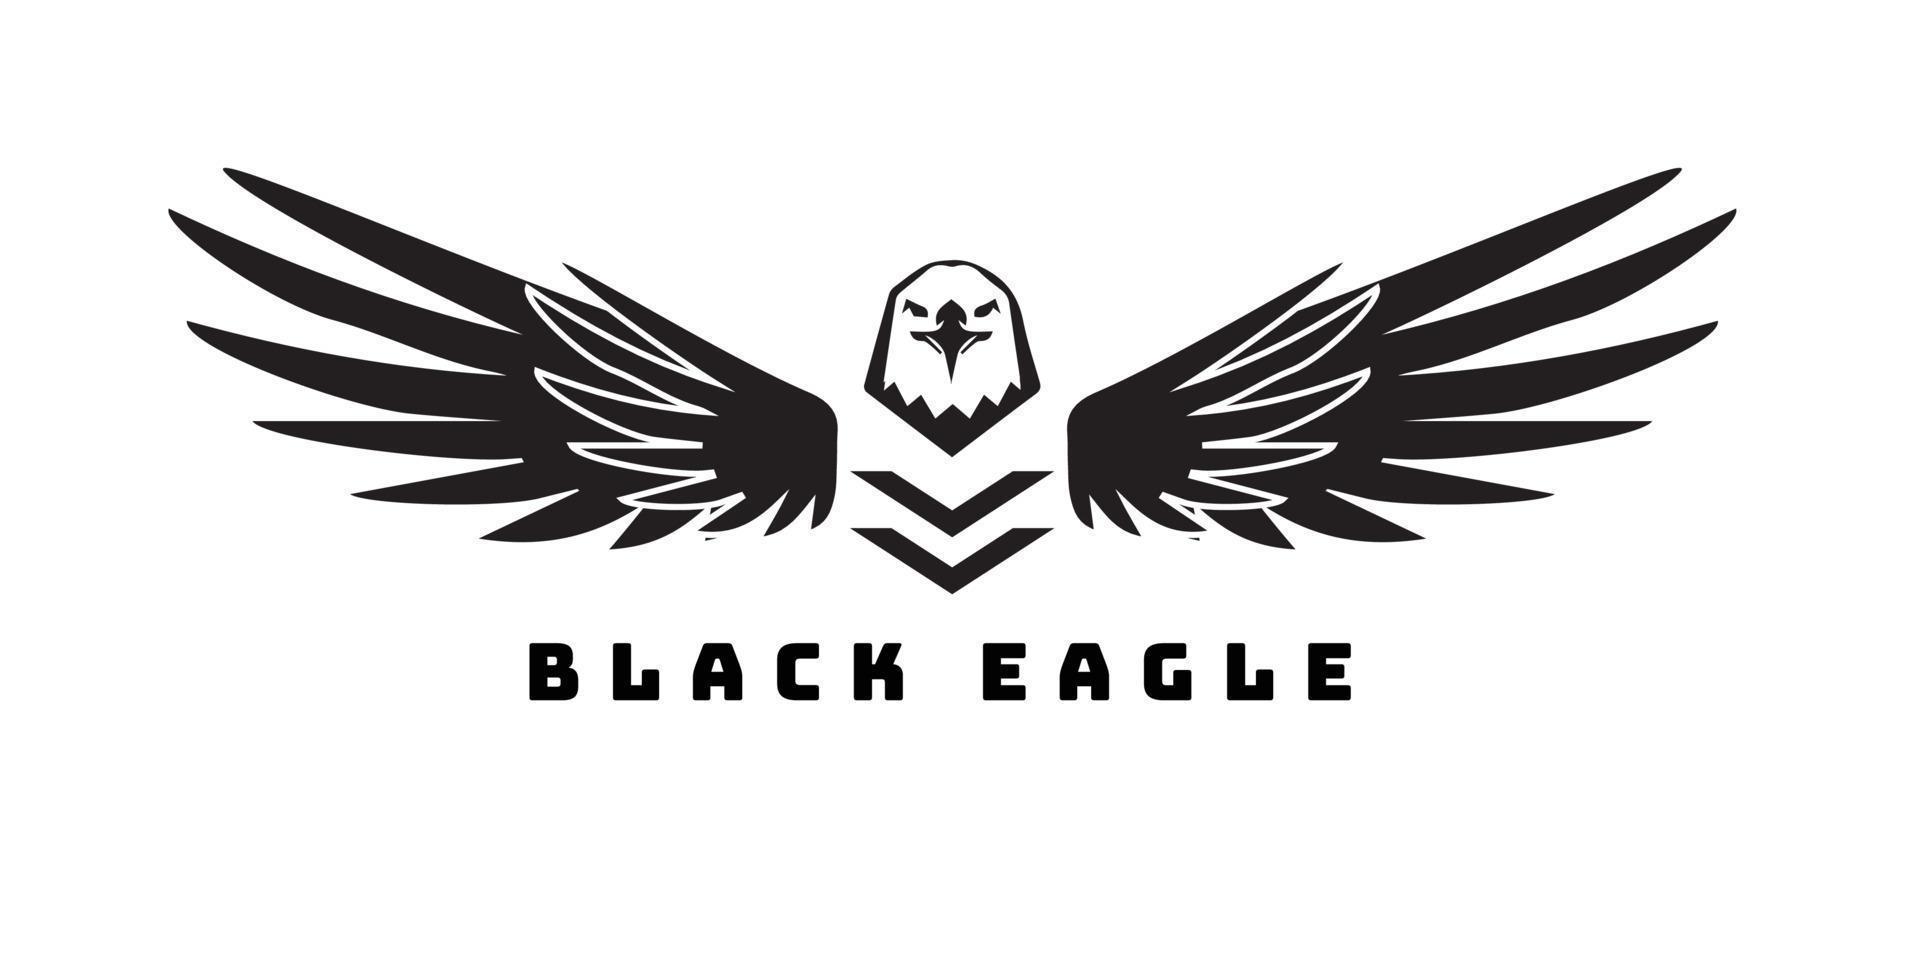 Vintage retro eagle falcon bird  comunnity emblem or logo vector